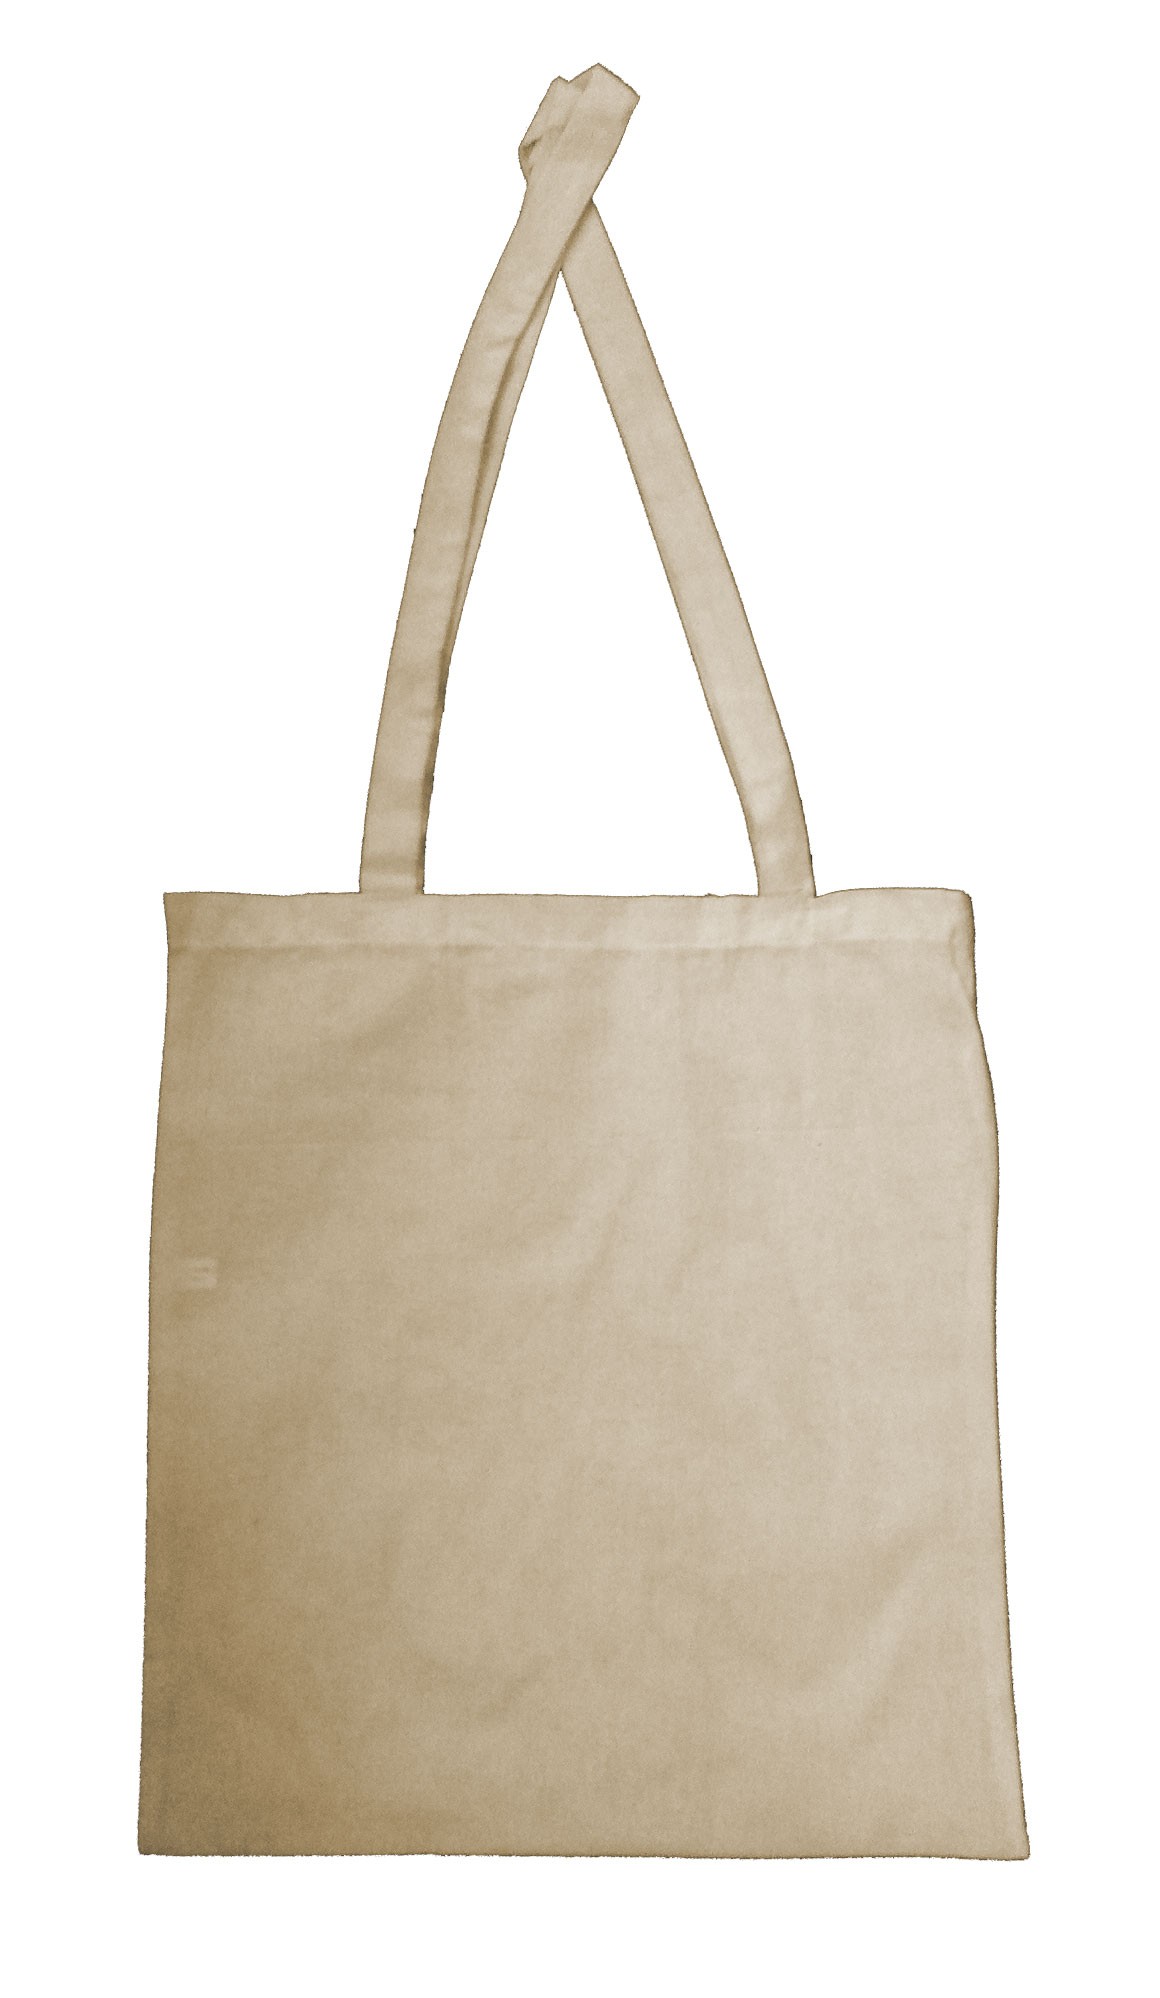 Výprodej - SG 601.57 - Bavlněná nákupní taška natur, dlouhé ucho II. jakost (nejprodávanější typ plátěné tašky)